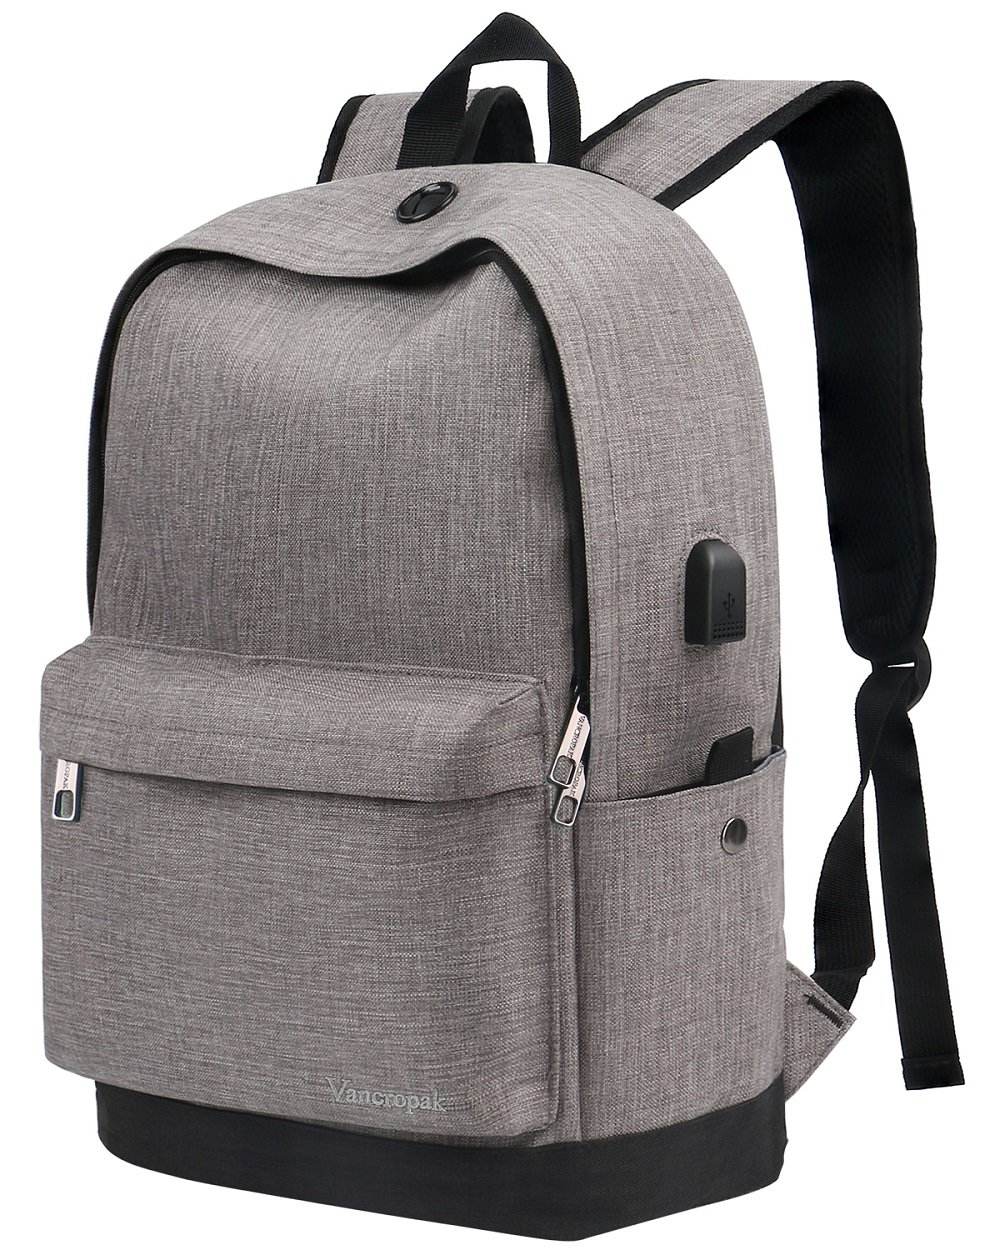 Vancropak Oxford Cloth Zippered Backpack